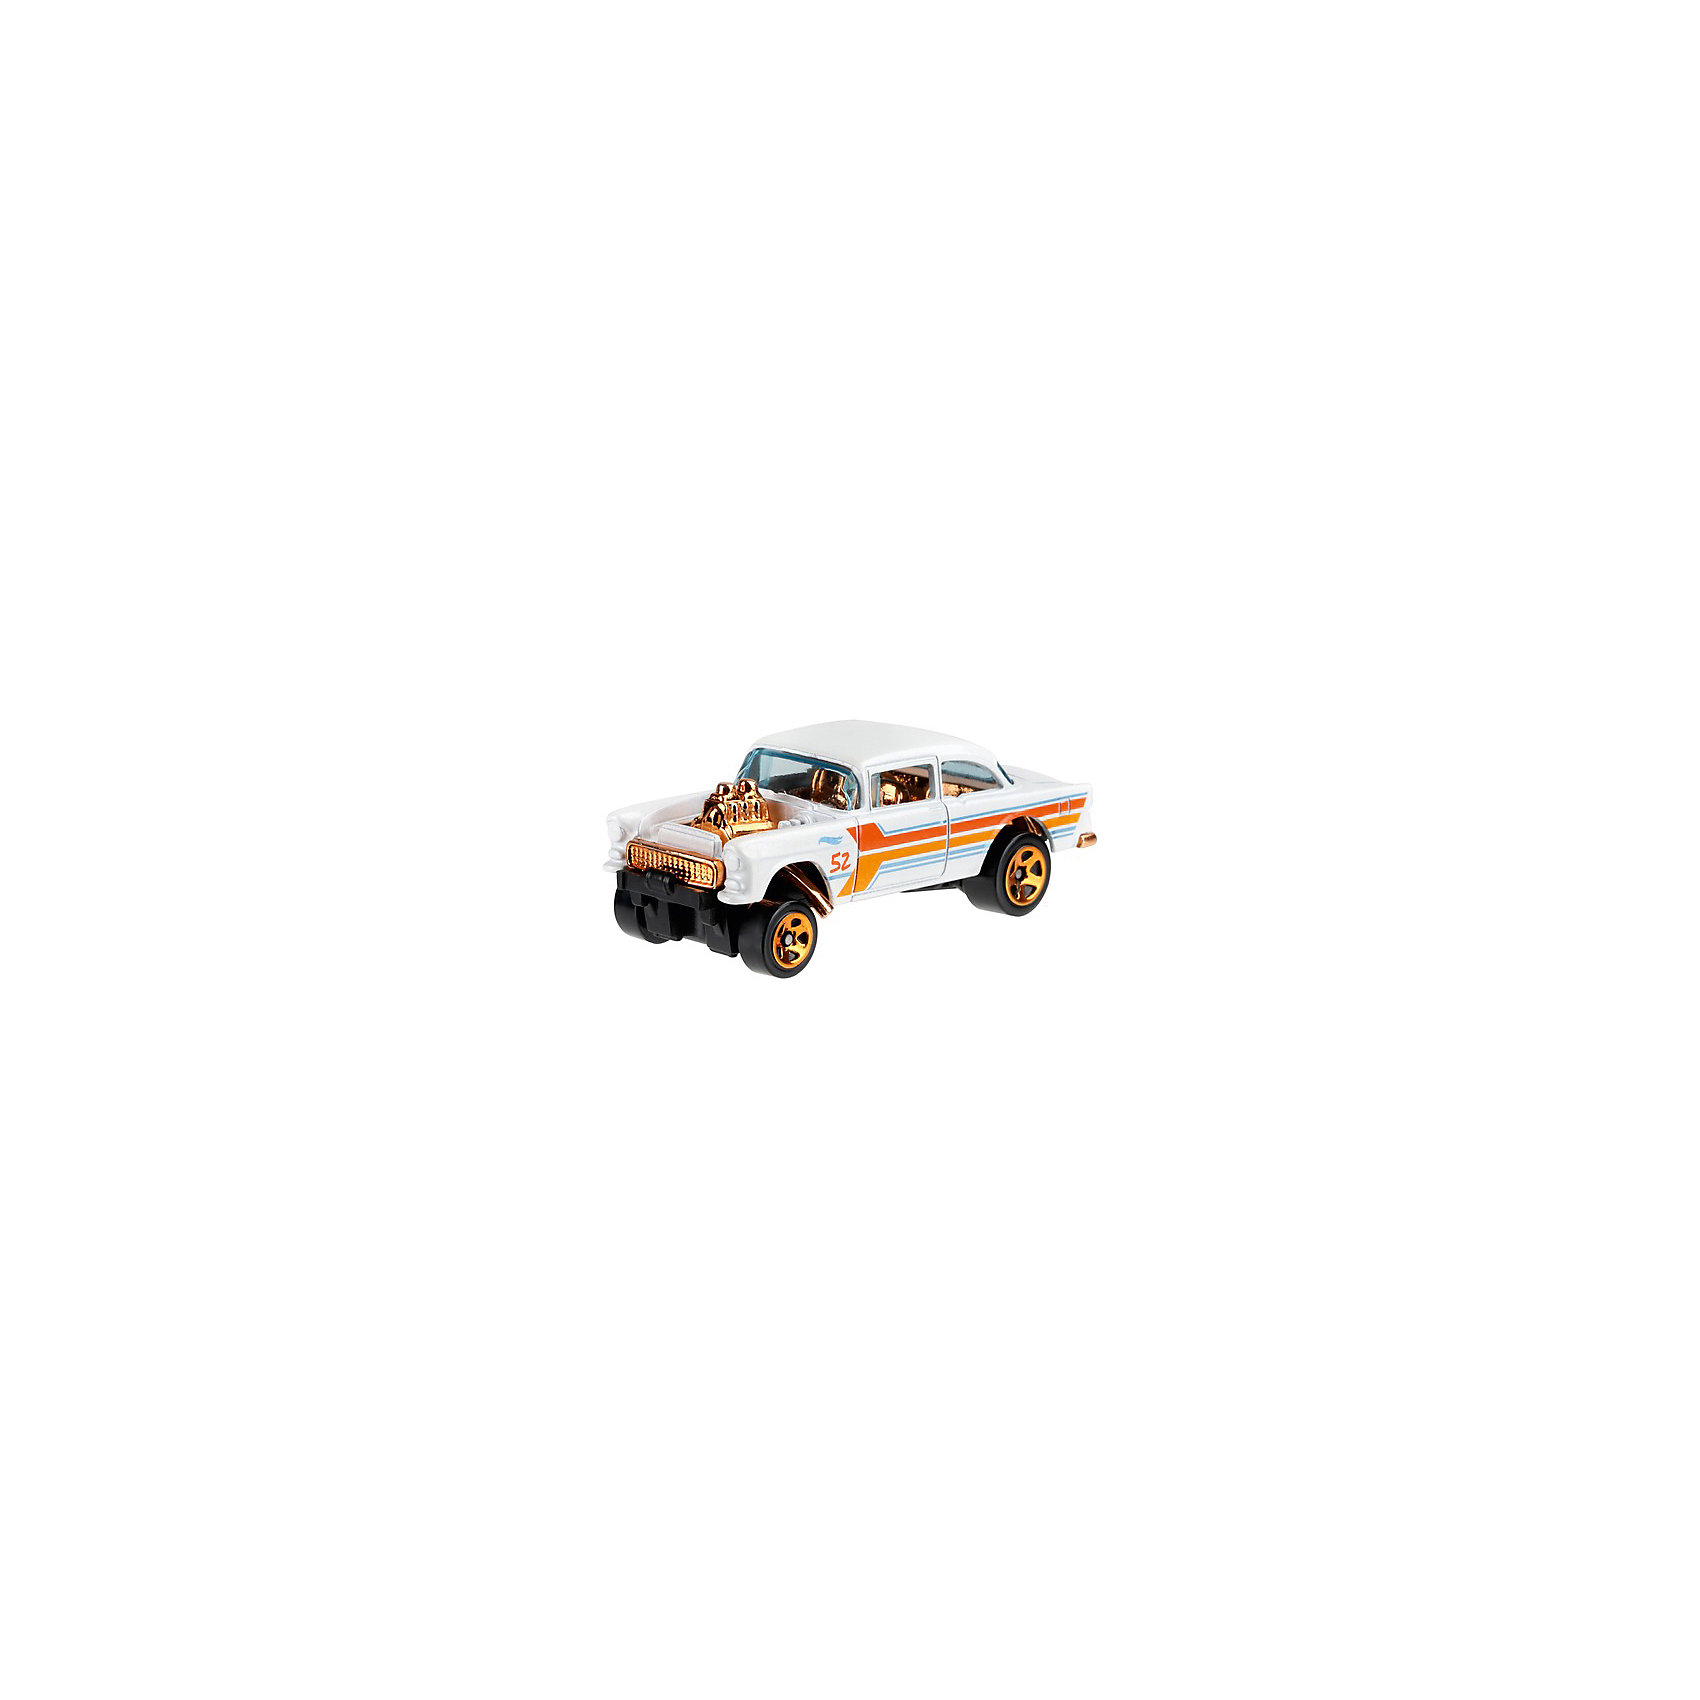 Премиальная машинка Hot Wheels "Перламутр и хром" 55 Chevy Bel Air Gasser Mattel 14198296